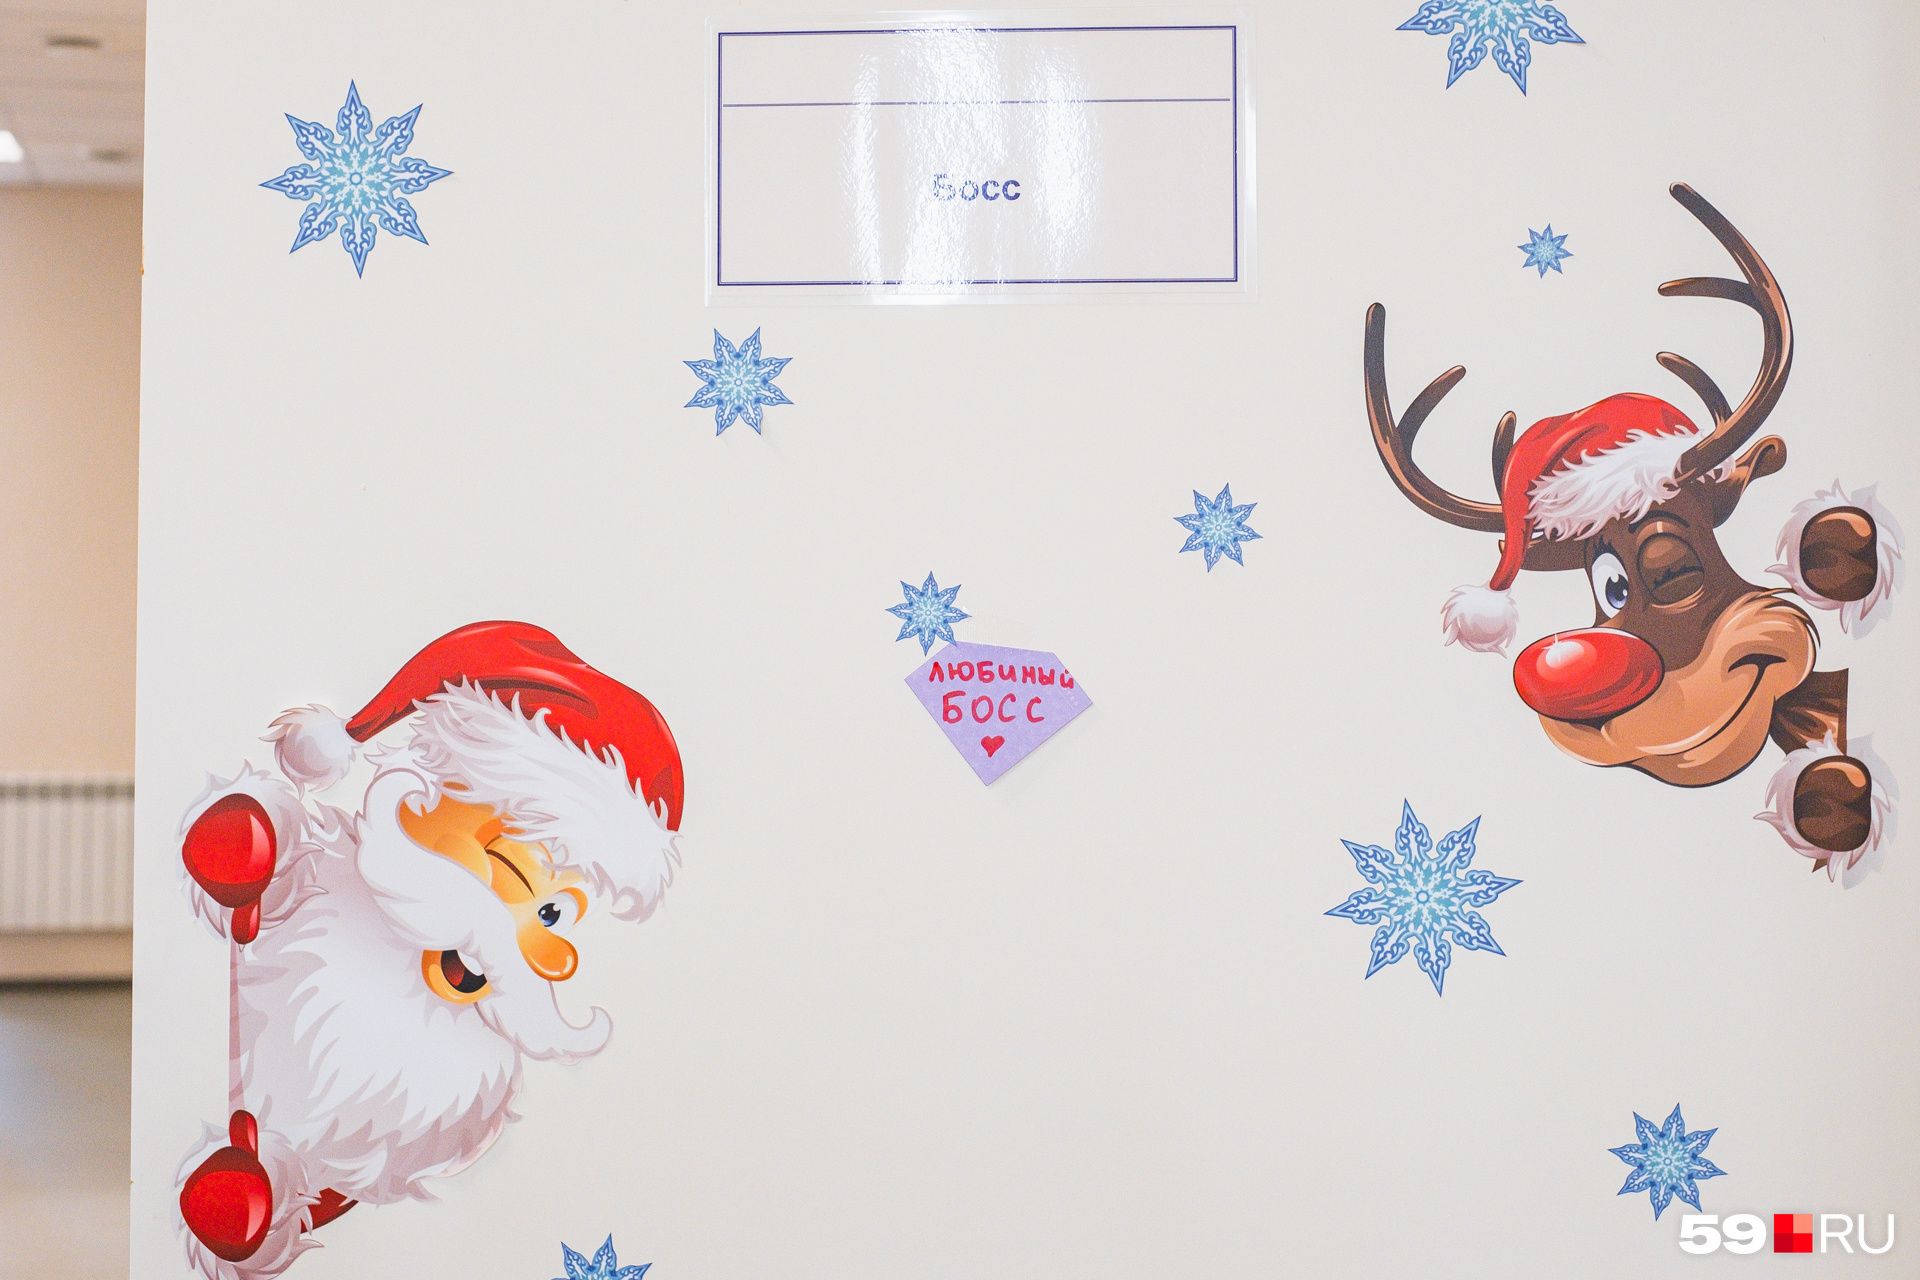 На двери забавные наклейки. Санта и олень остались с Нового года, а стикер с надписью «Любимый босс» на кабинет наклеили 14 февраля